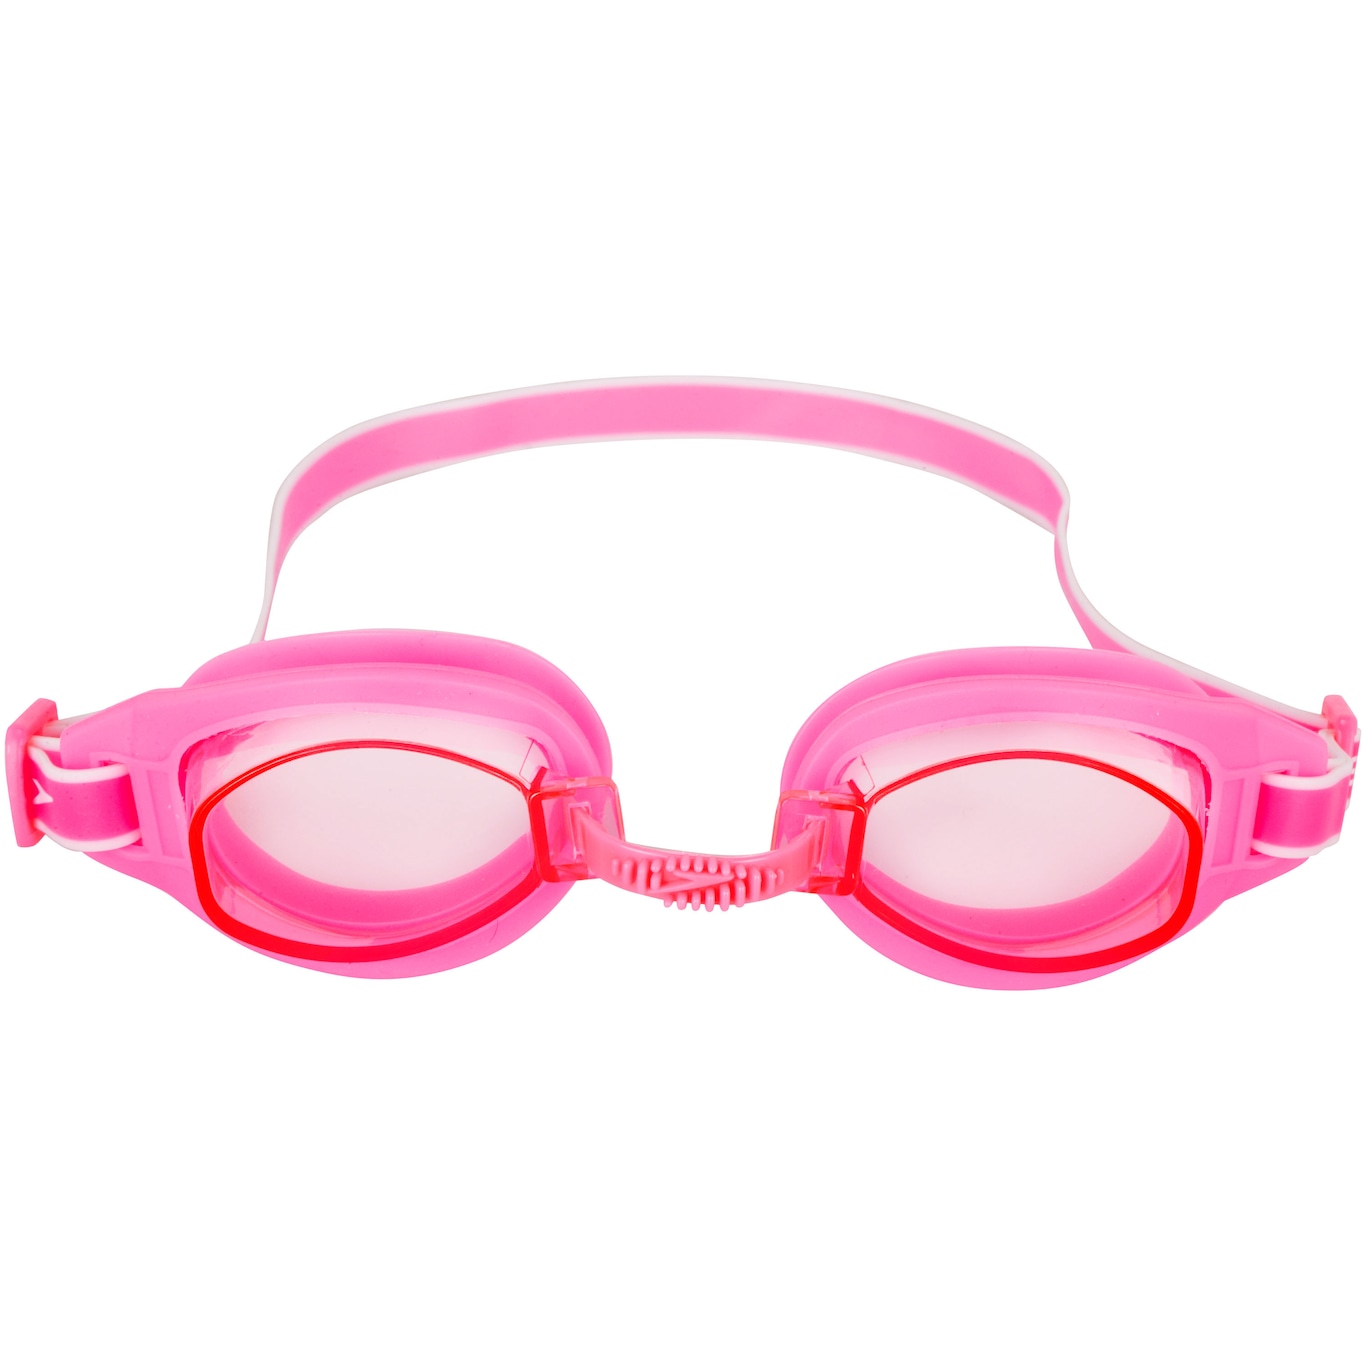 Kit de Natação Speedo Swim com Óculos + Touca + Protetor de Ouvido - Adulto - Foto 4